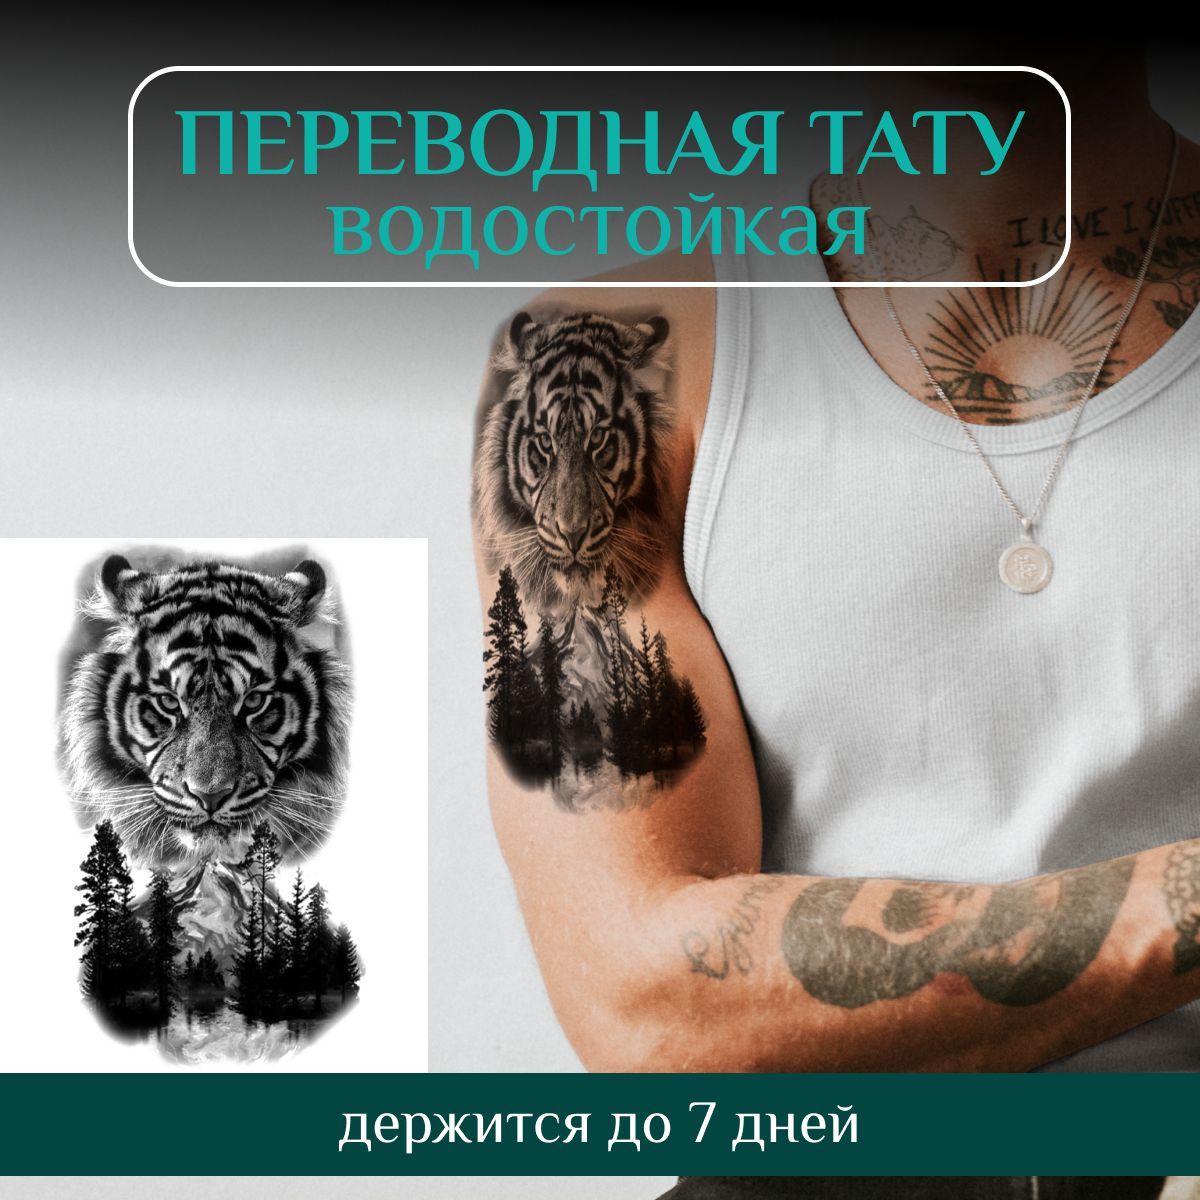 Значение тату с изображением тигра